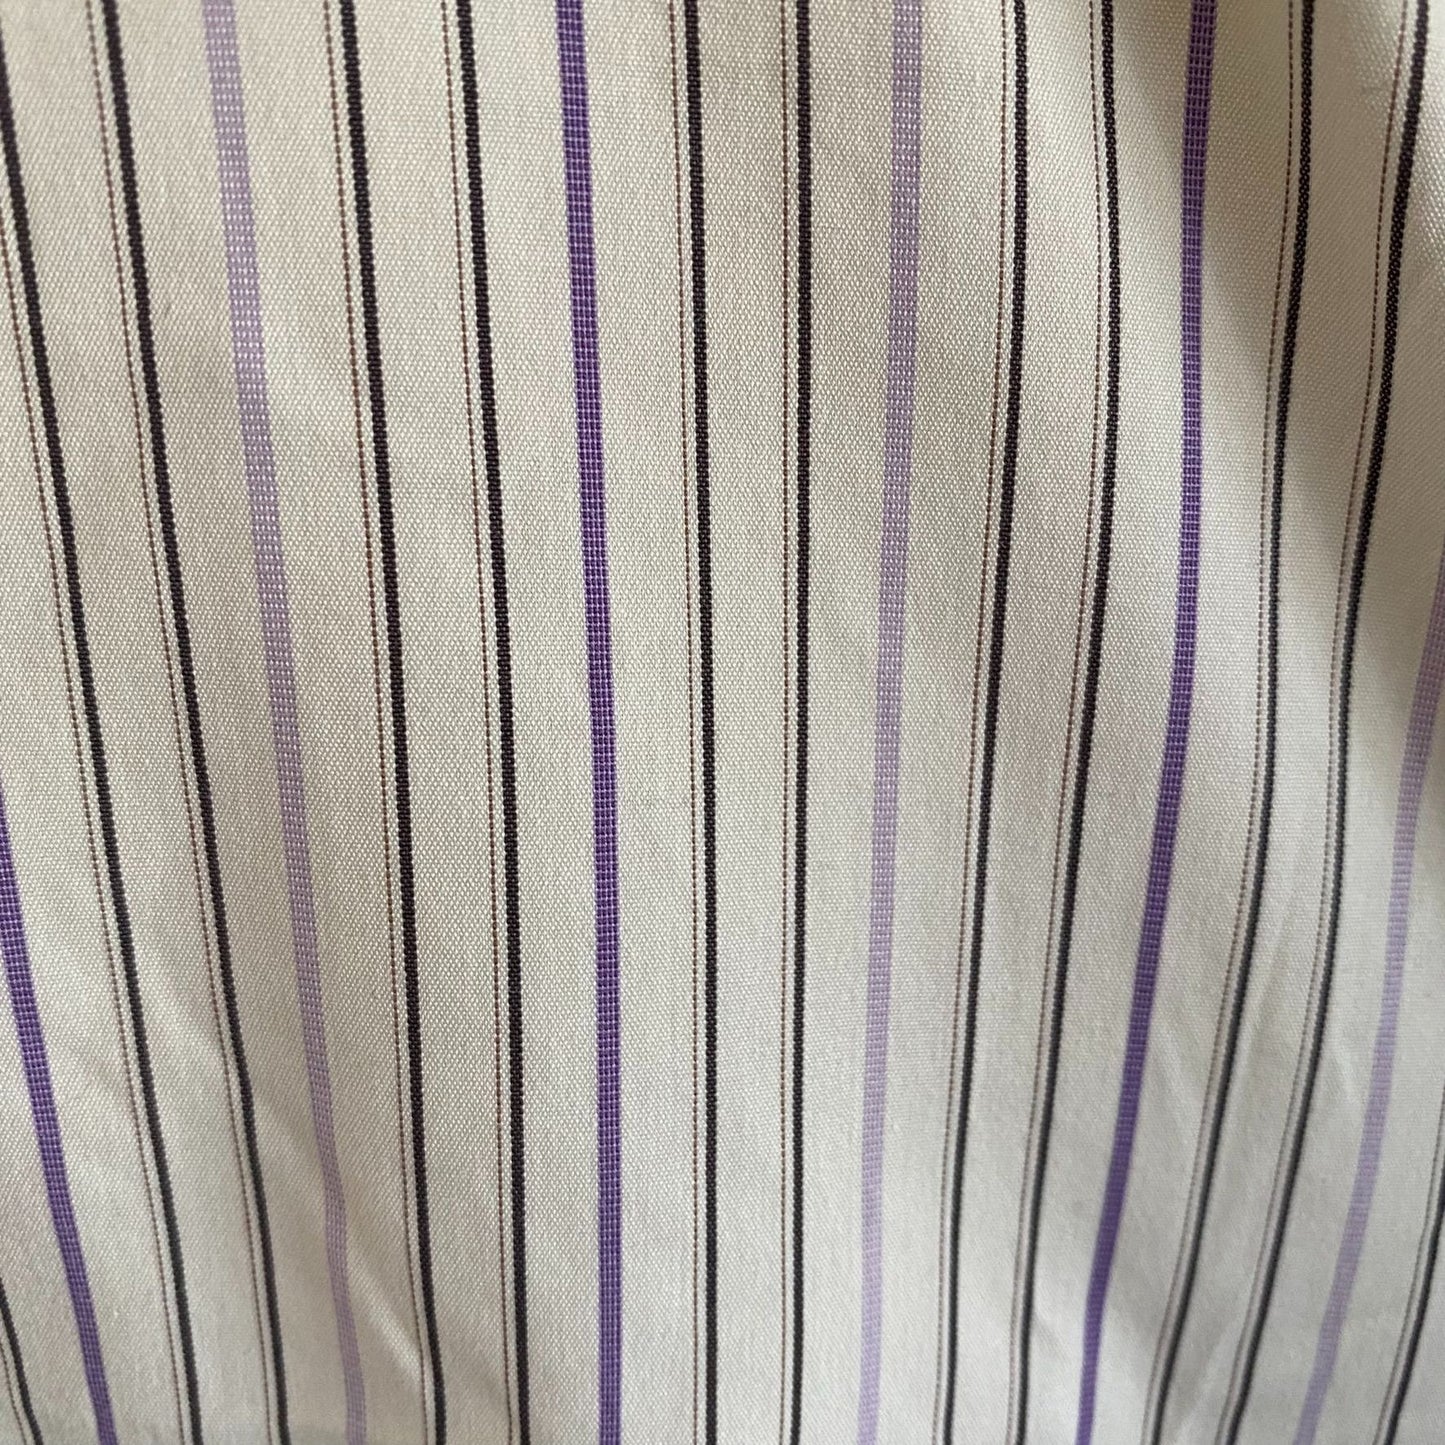 Metropolitan View Striped L/S Shirt